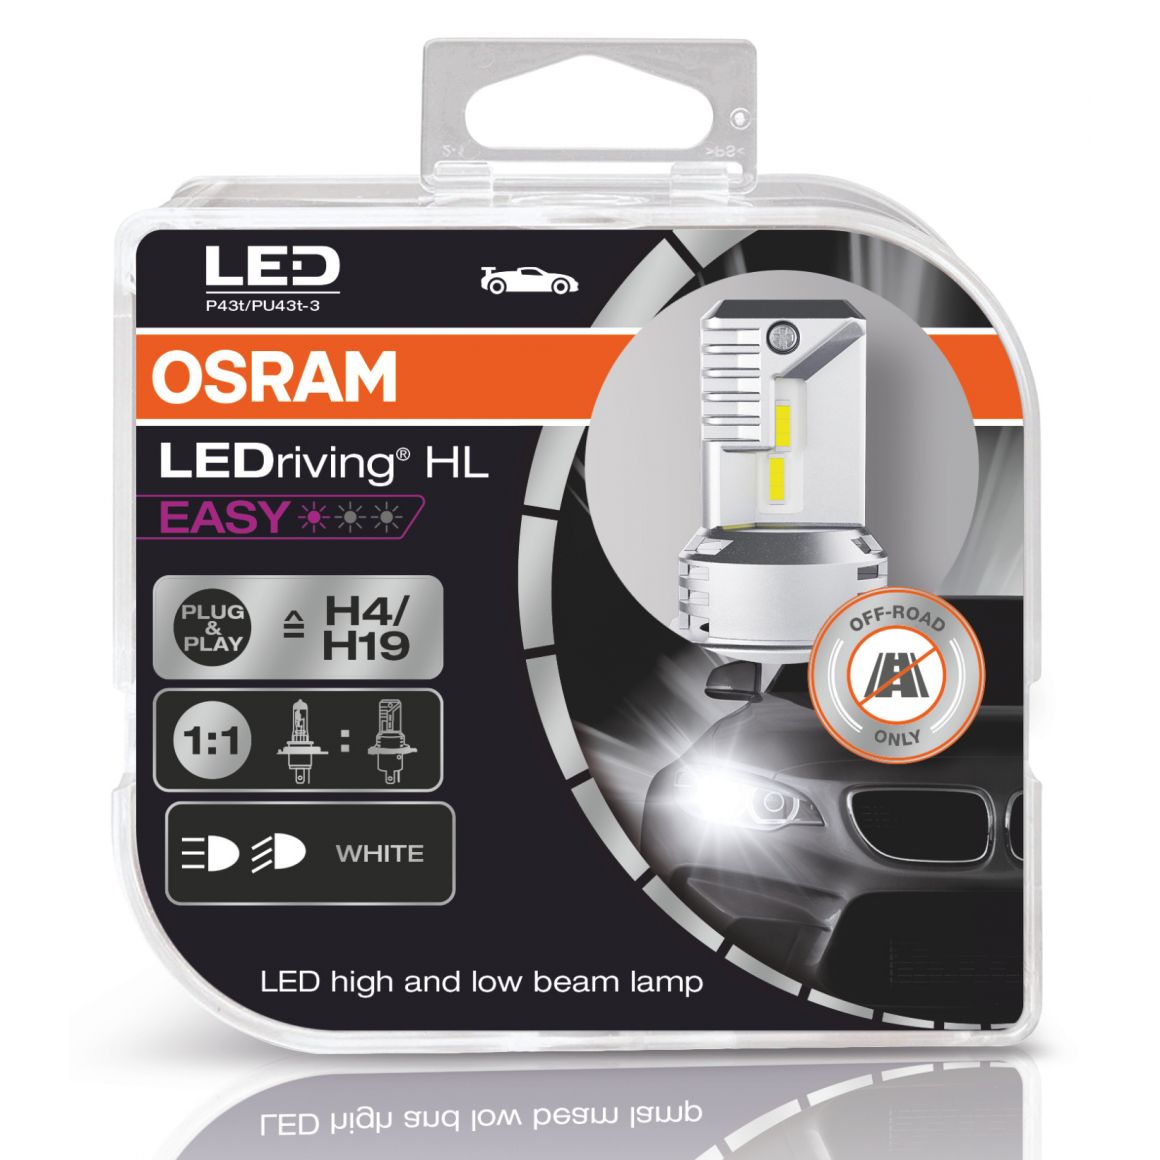 OSRAM LEDriving HL EASY H4/H19